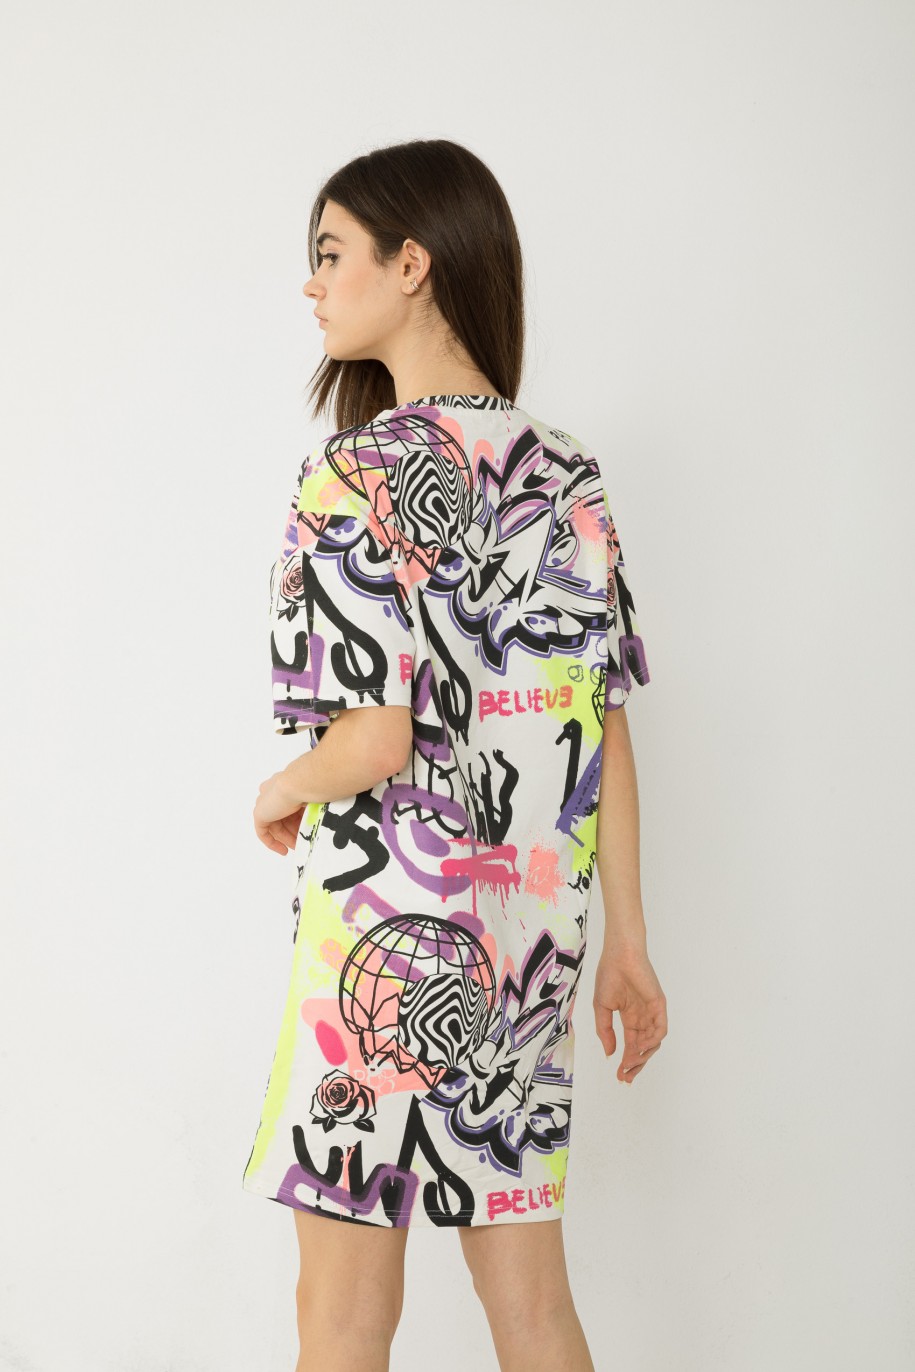 Wielobarwna sukienka t-shirtowa z nadrukami graffiti - 42725